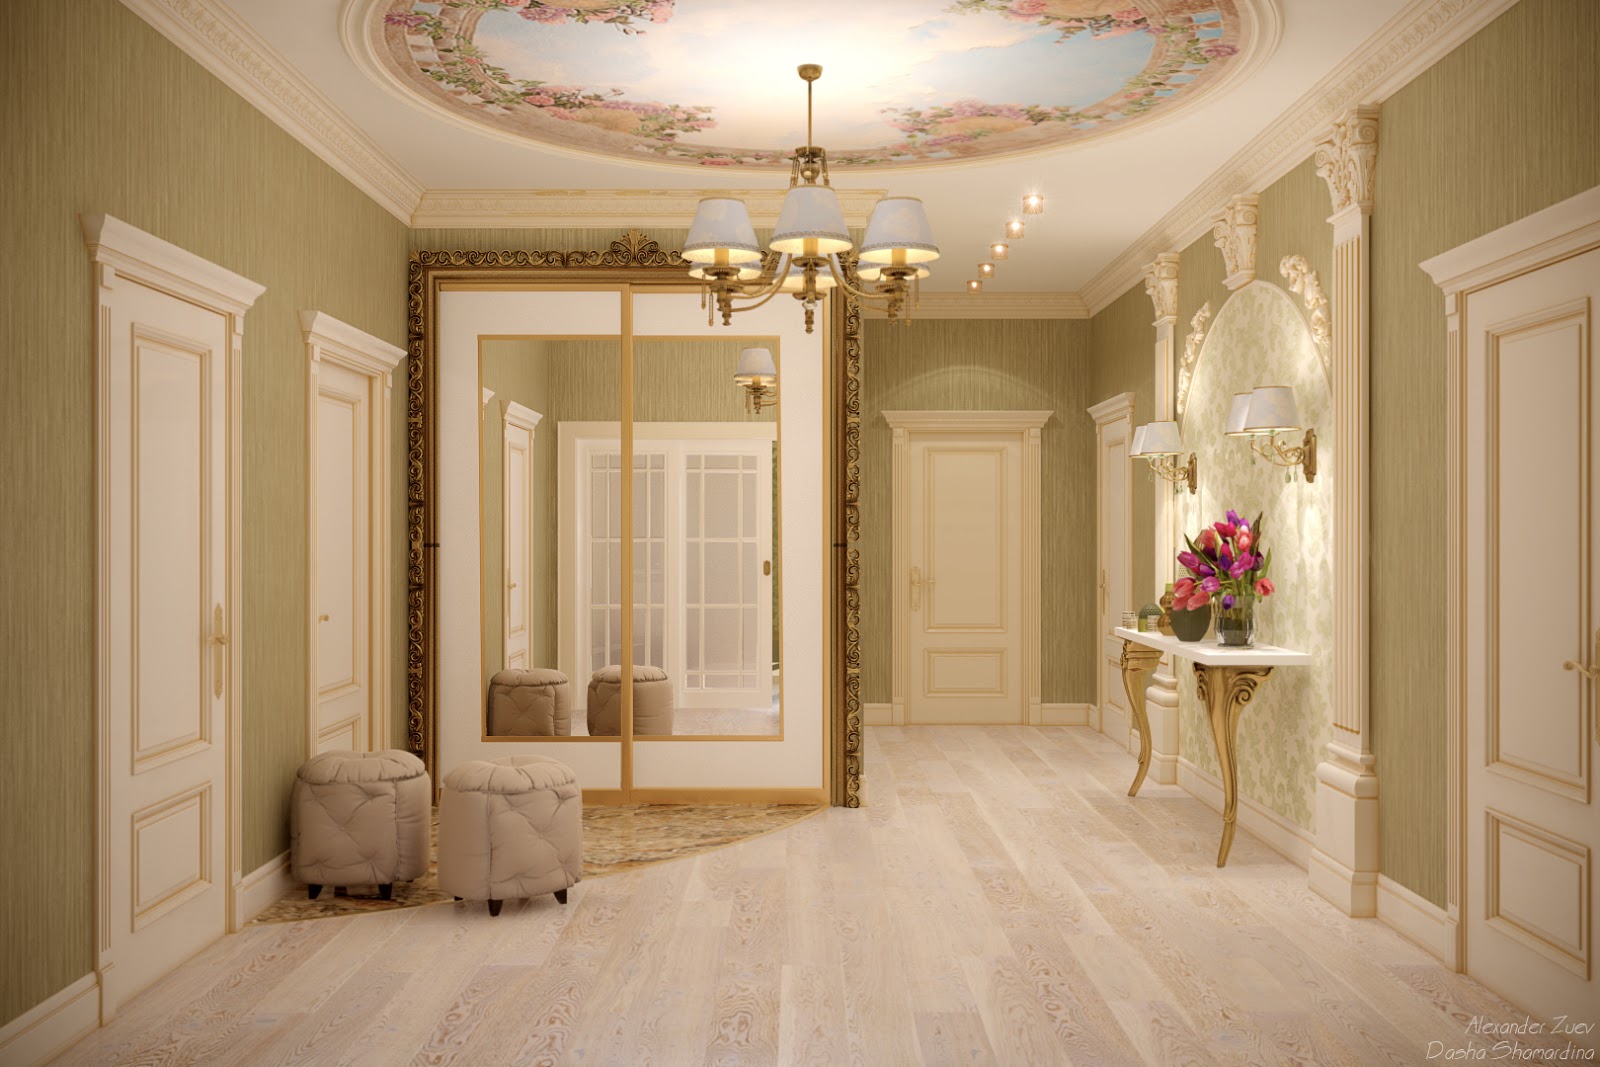 Hall bedroom. Интерьер прихожей klassicheskom stile. Классический стиль в интерьере. Красивые интерьеры в классическом стиле. Интерьер прихожей в классическом стиле.